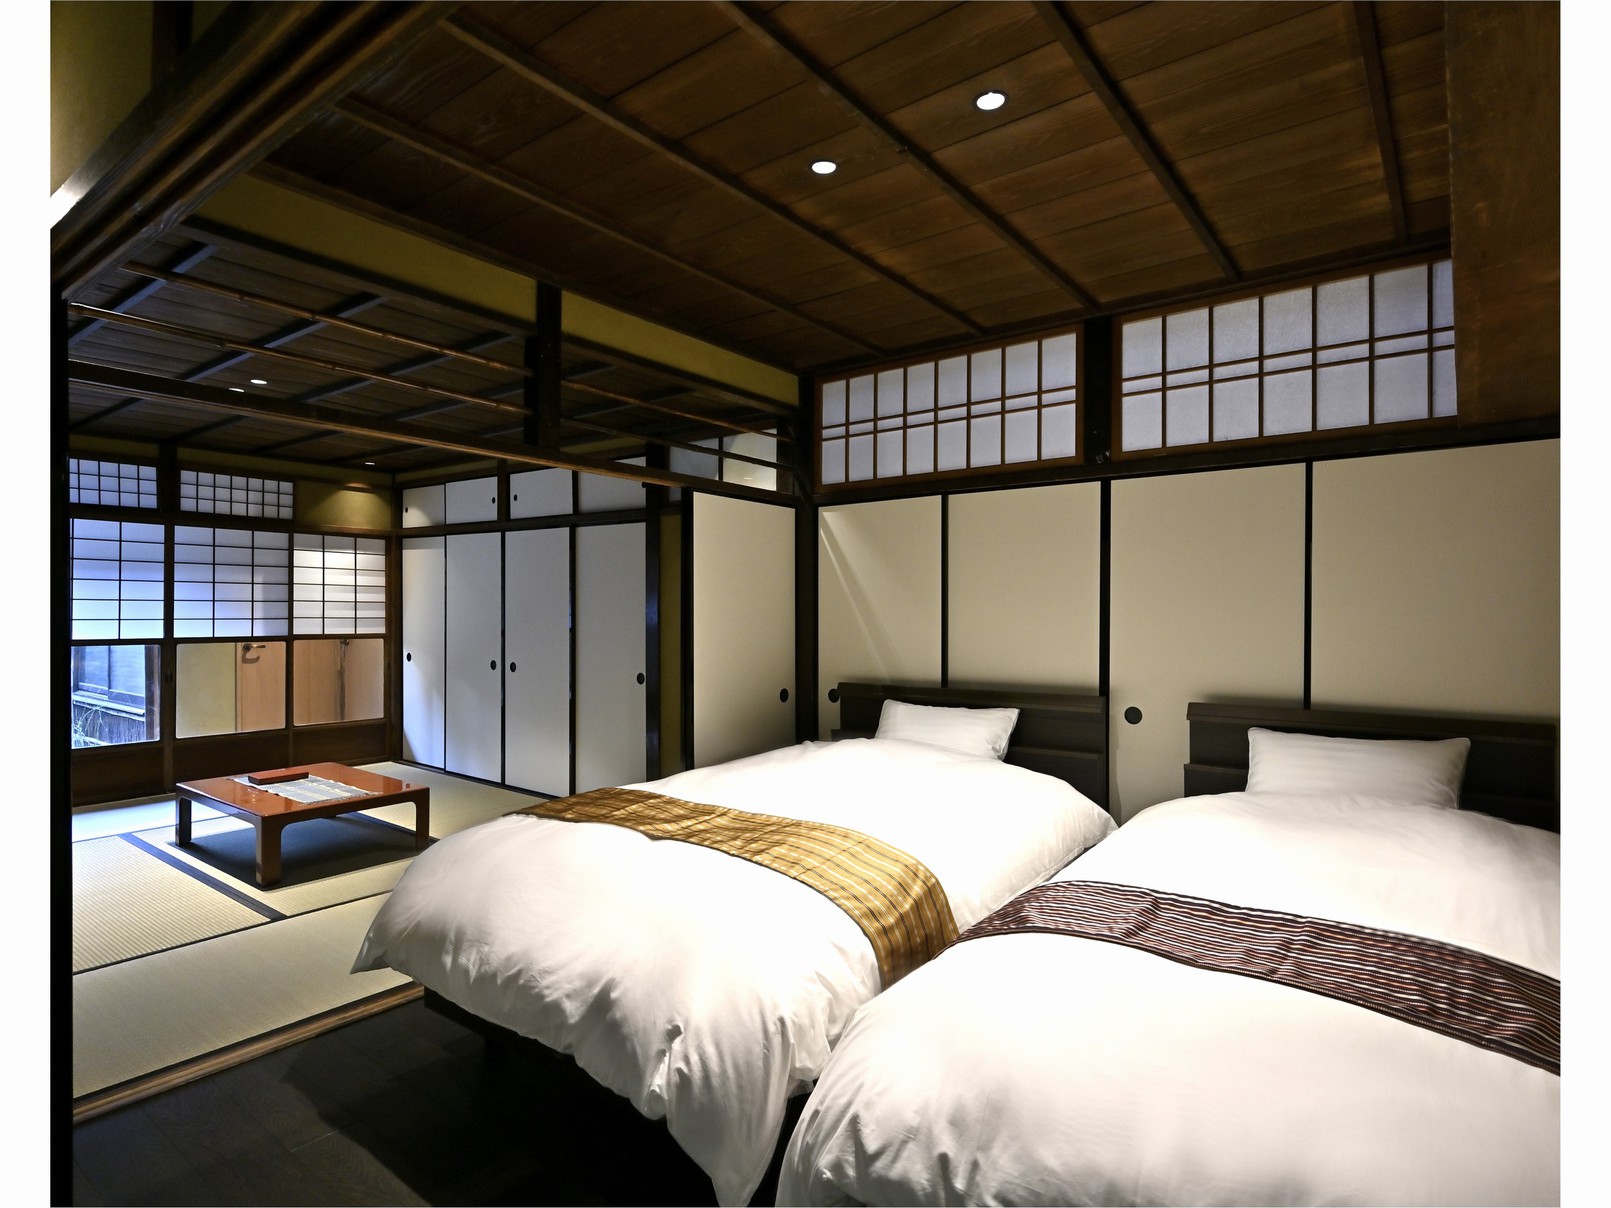 歴史香る有形文化財で贅沢な大人の京都時間